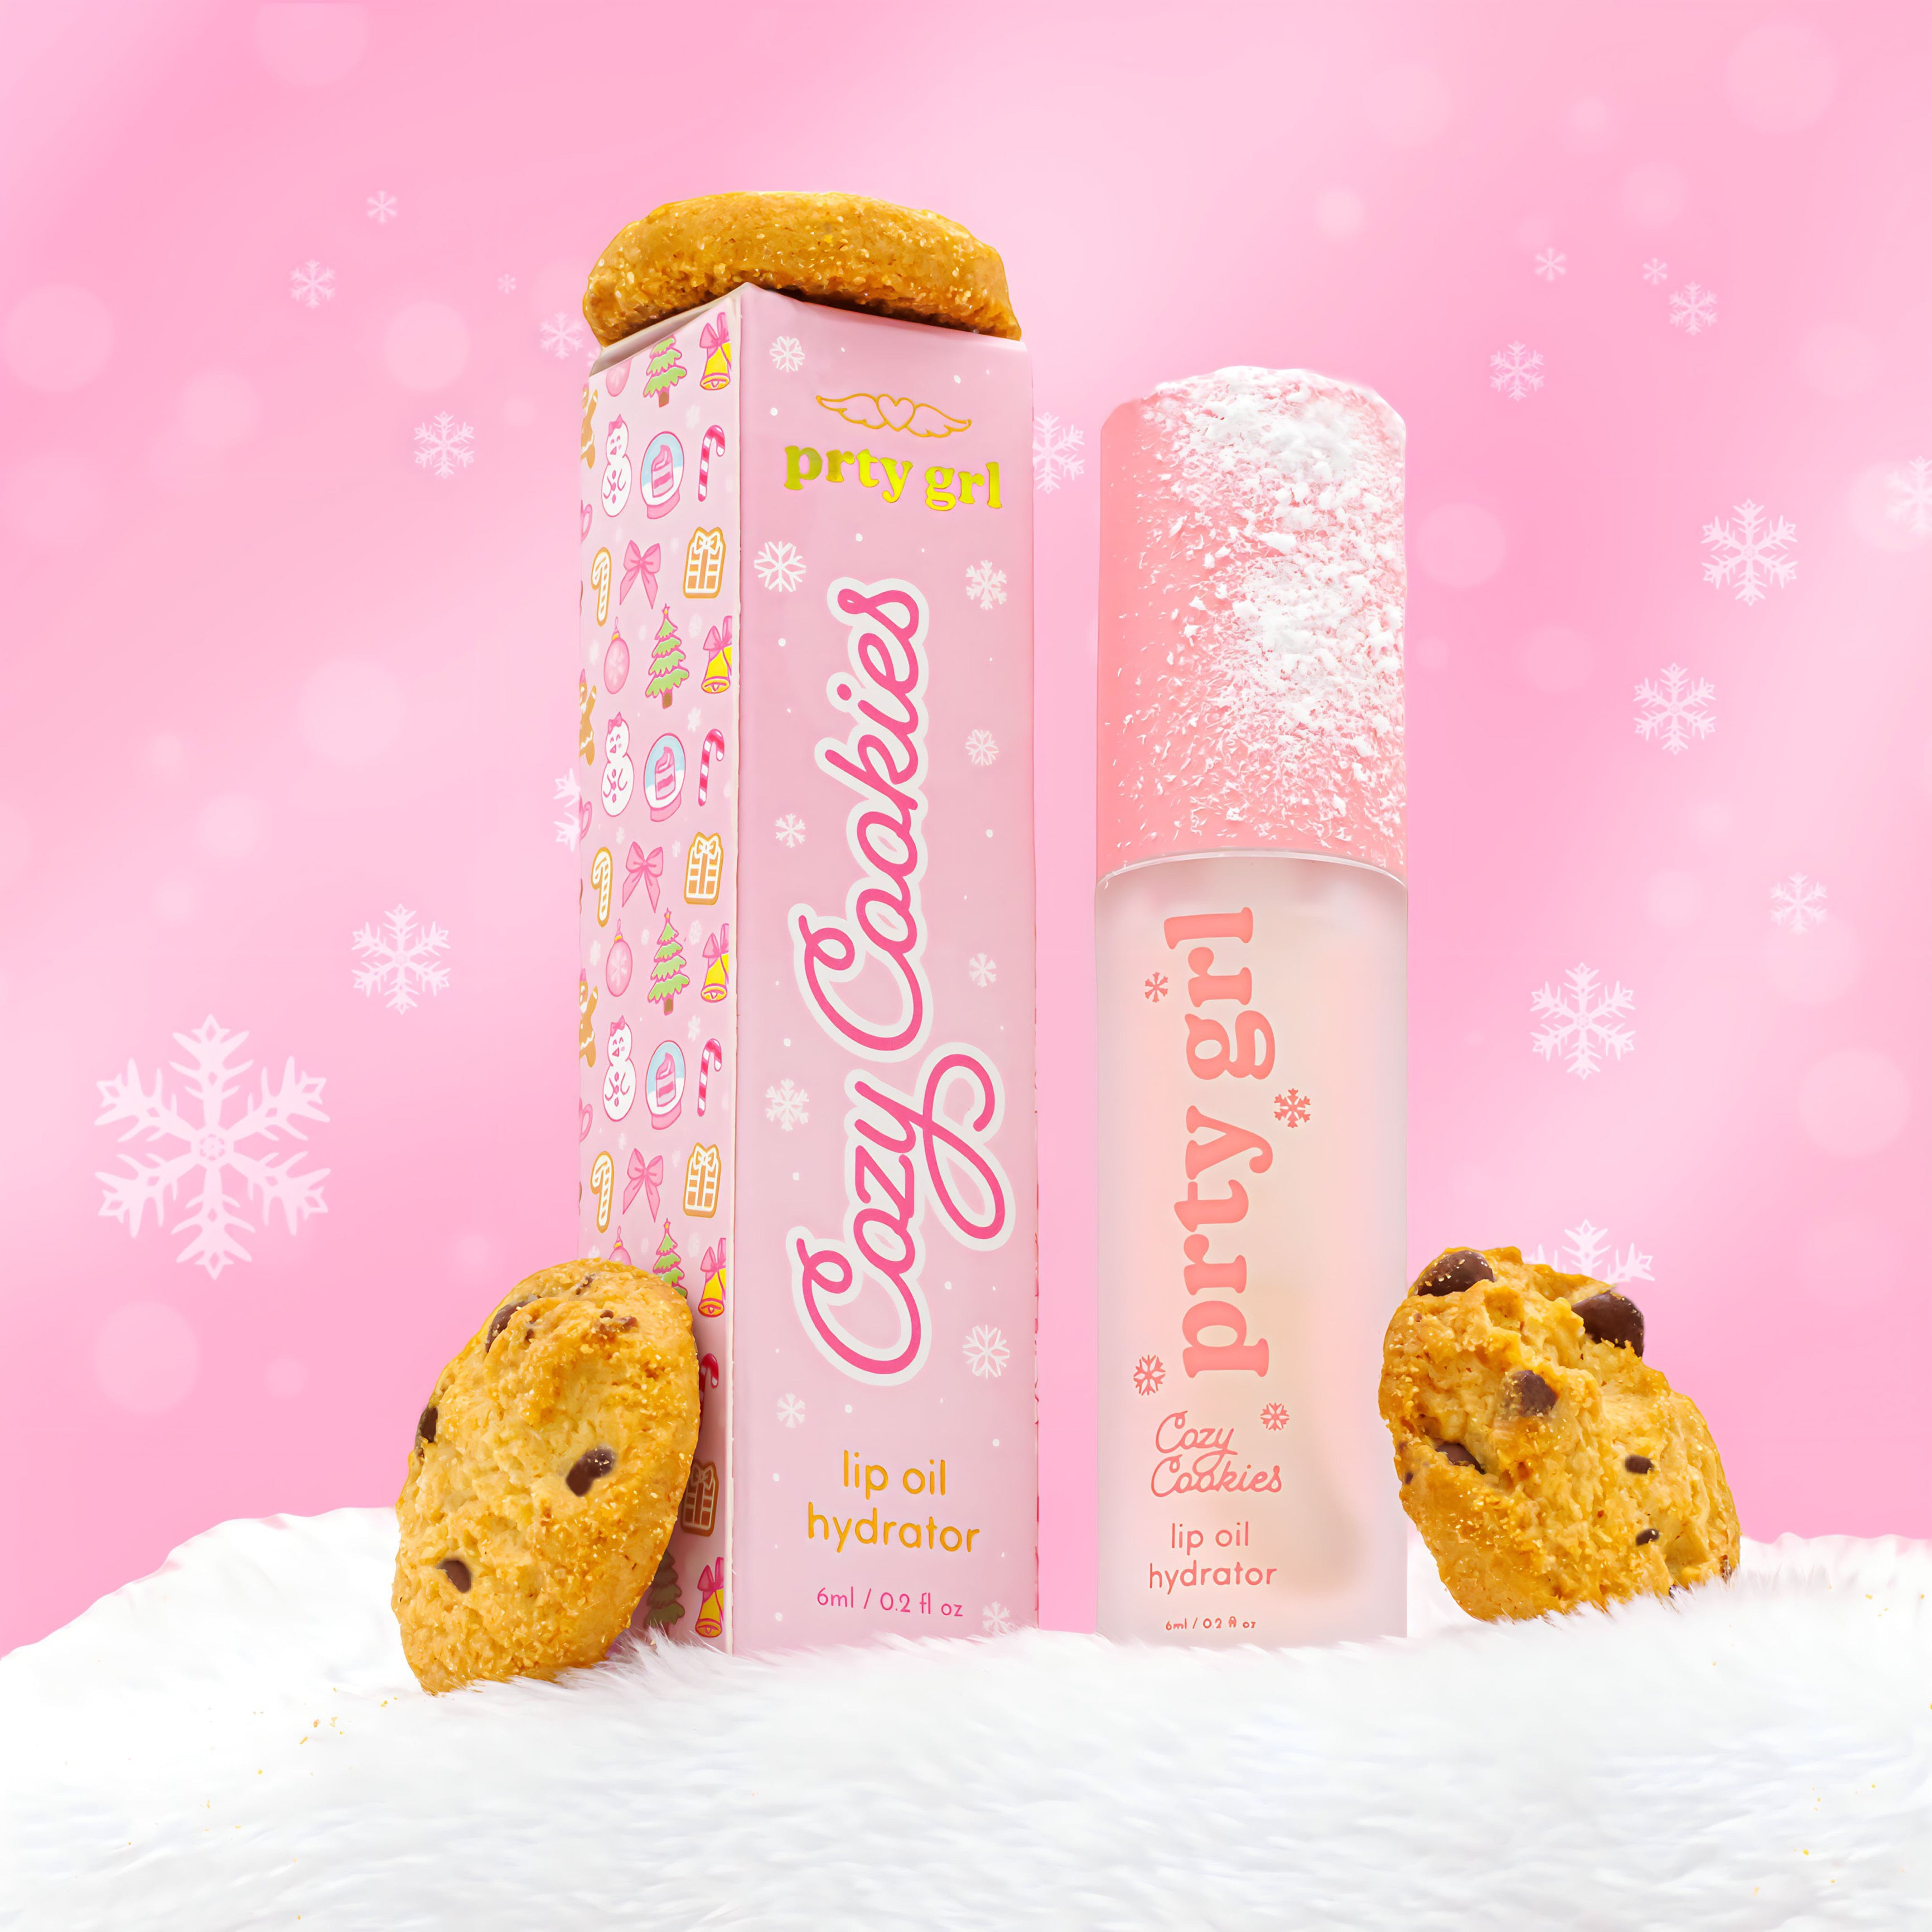 cozy cookies lip oil hydrator – prty grl beauty